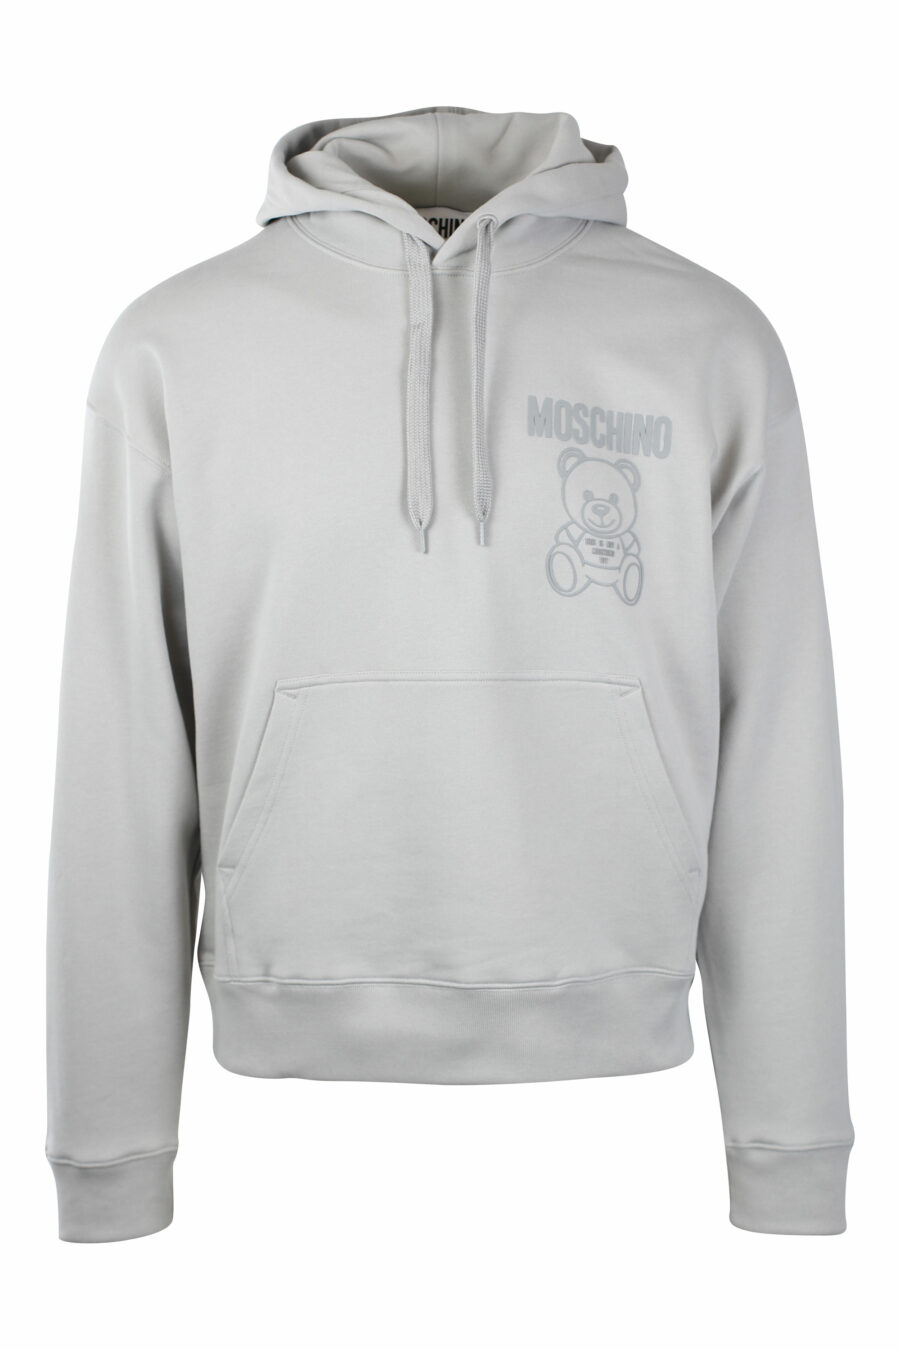 Sudadera gris con capucha y minilogo oso monocromático - IMG 1401